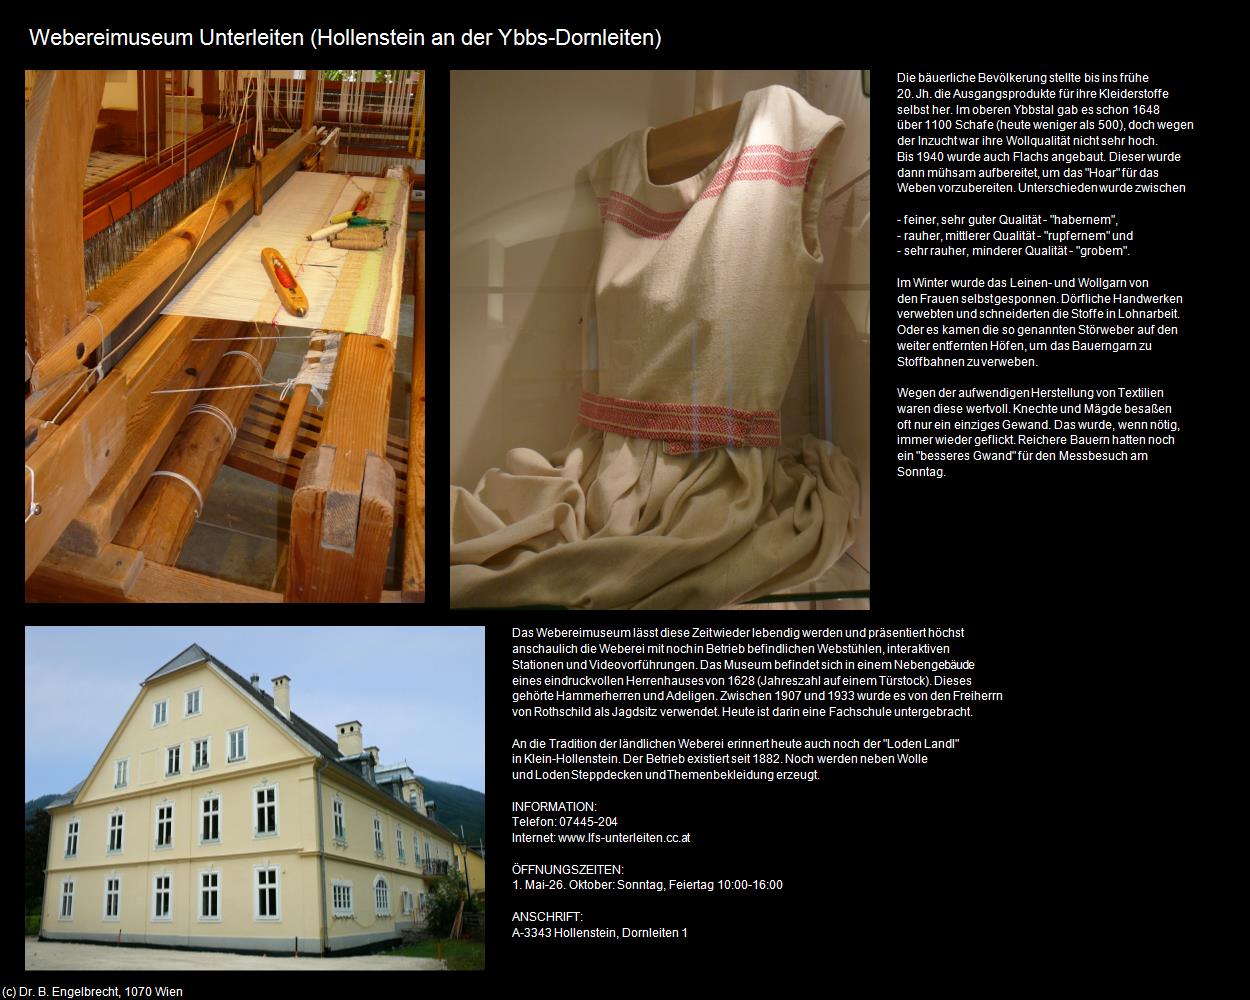 Webereimuseum Unterleiten (Dornleiten) (Hollenstein an der Ybbs) in Kulturatlas-NIEDERÖSTERREICH